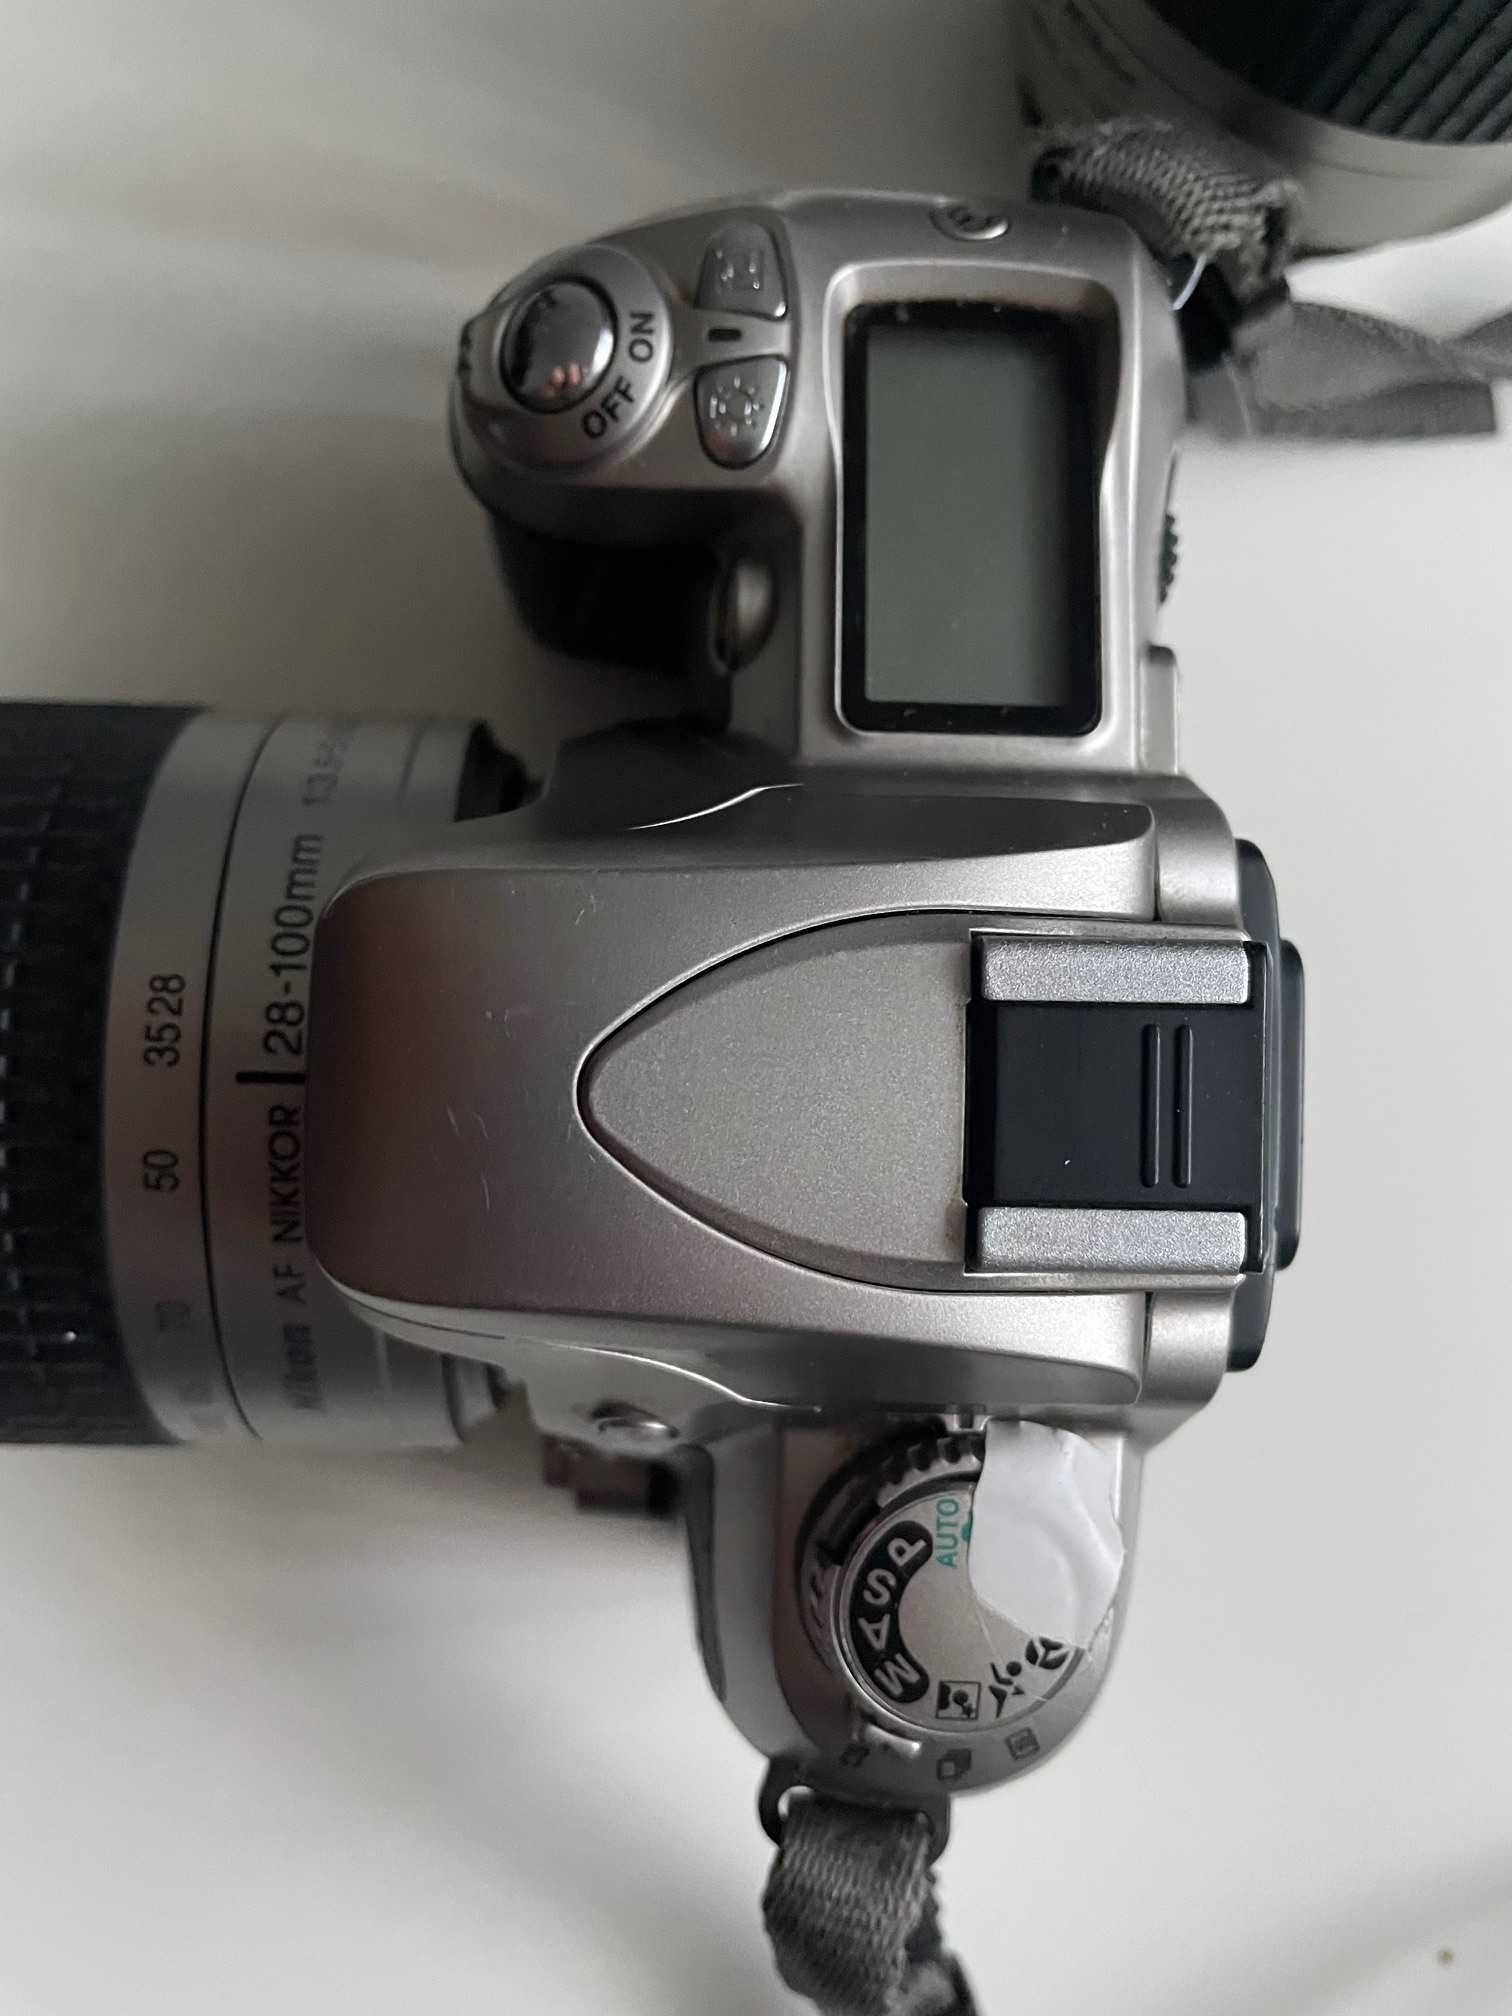 Aparat Nikon F75 z obiektywem 28-100mm